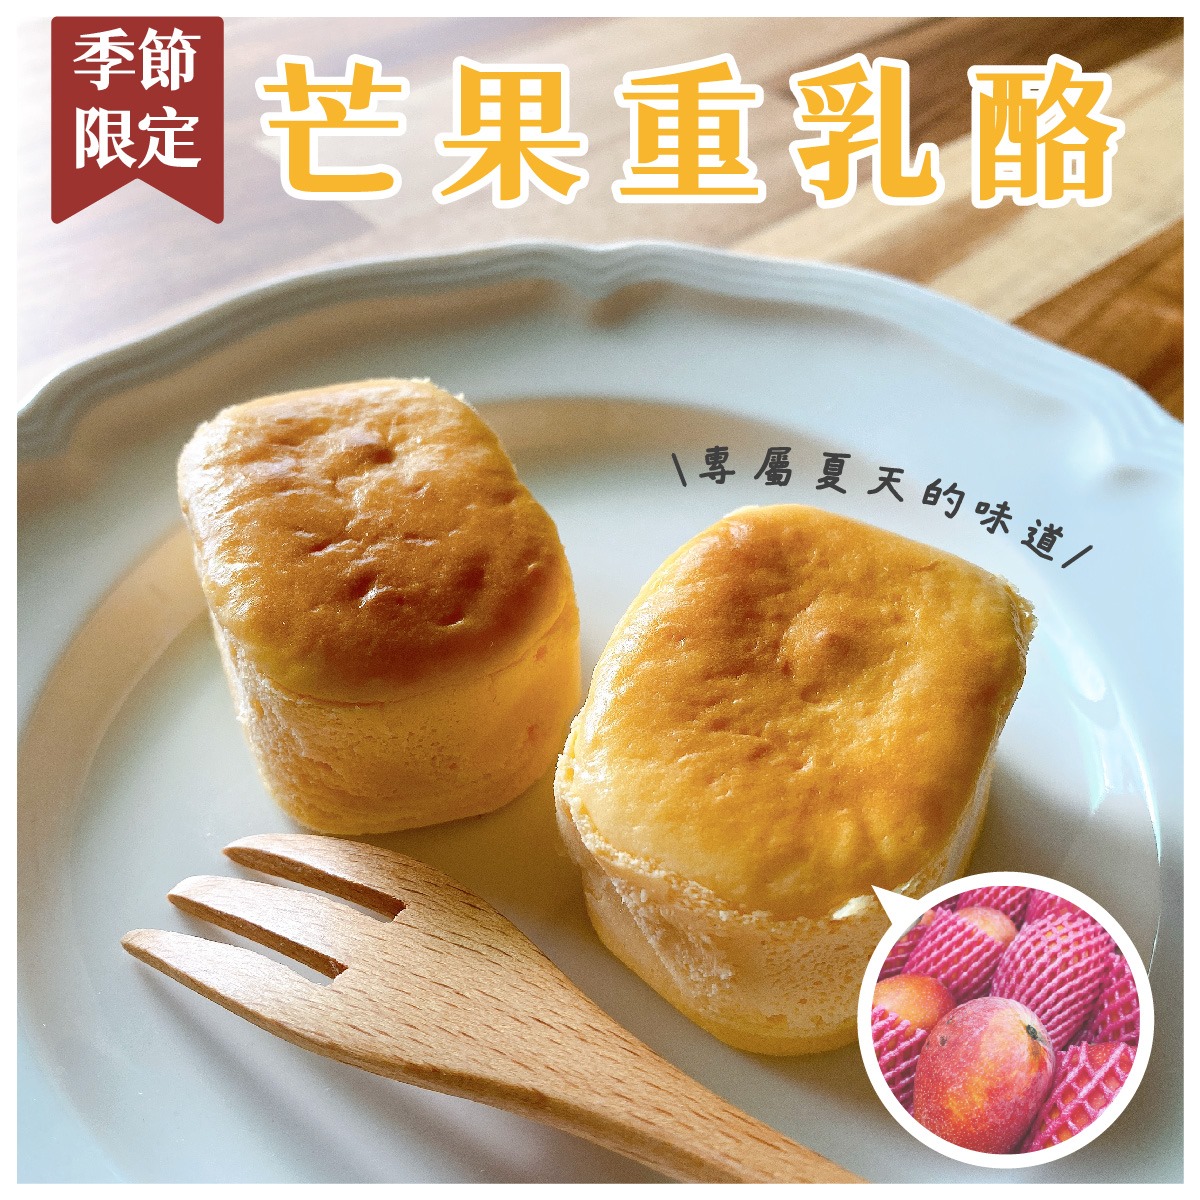 【寶珍香】半熟乳酪禮盒(6入/盒) 芒果乳酪／柚子乳酪